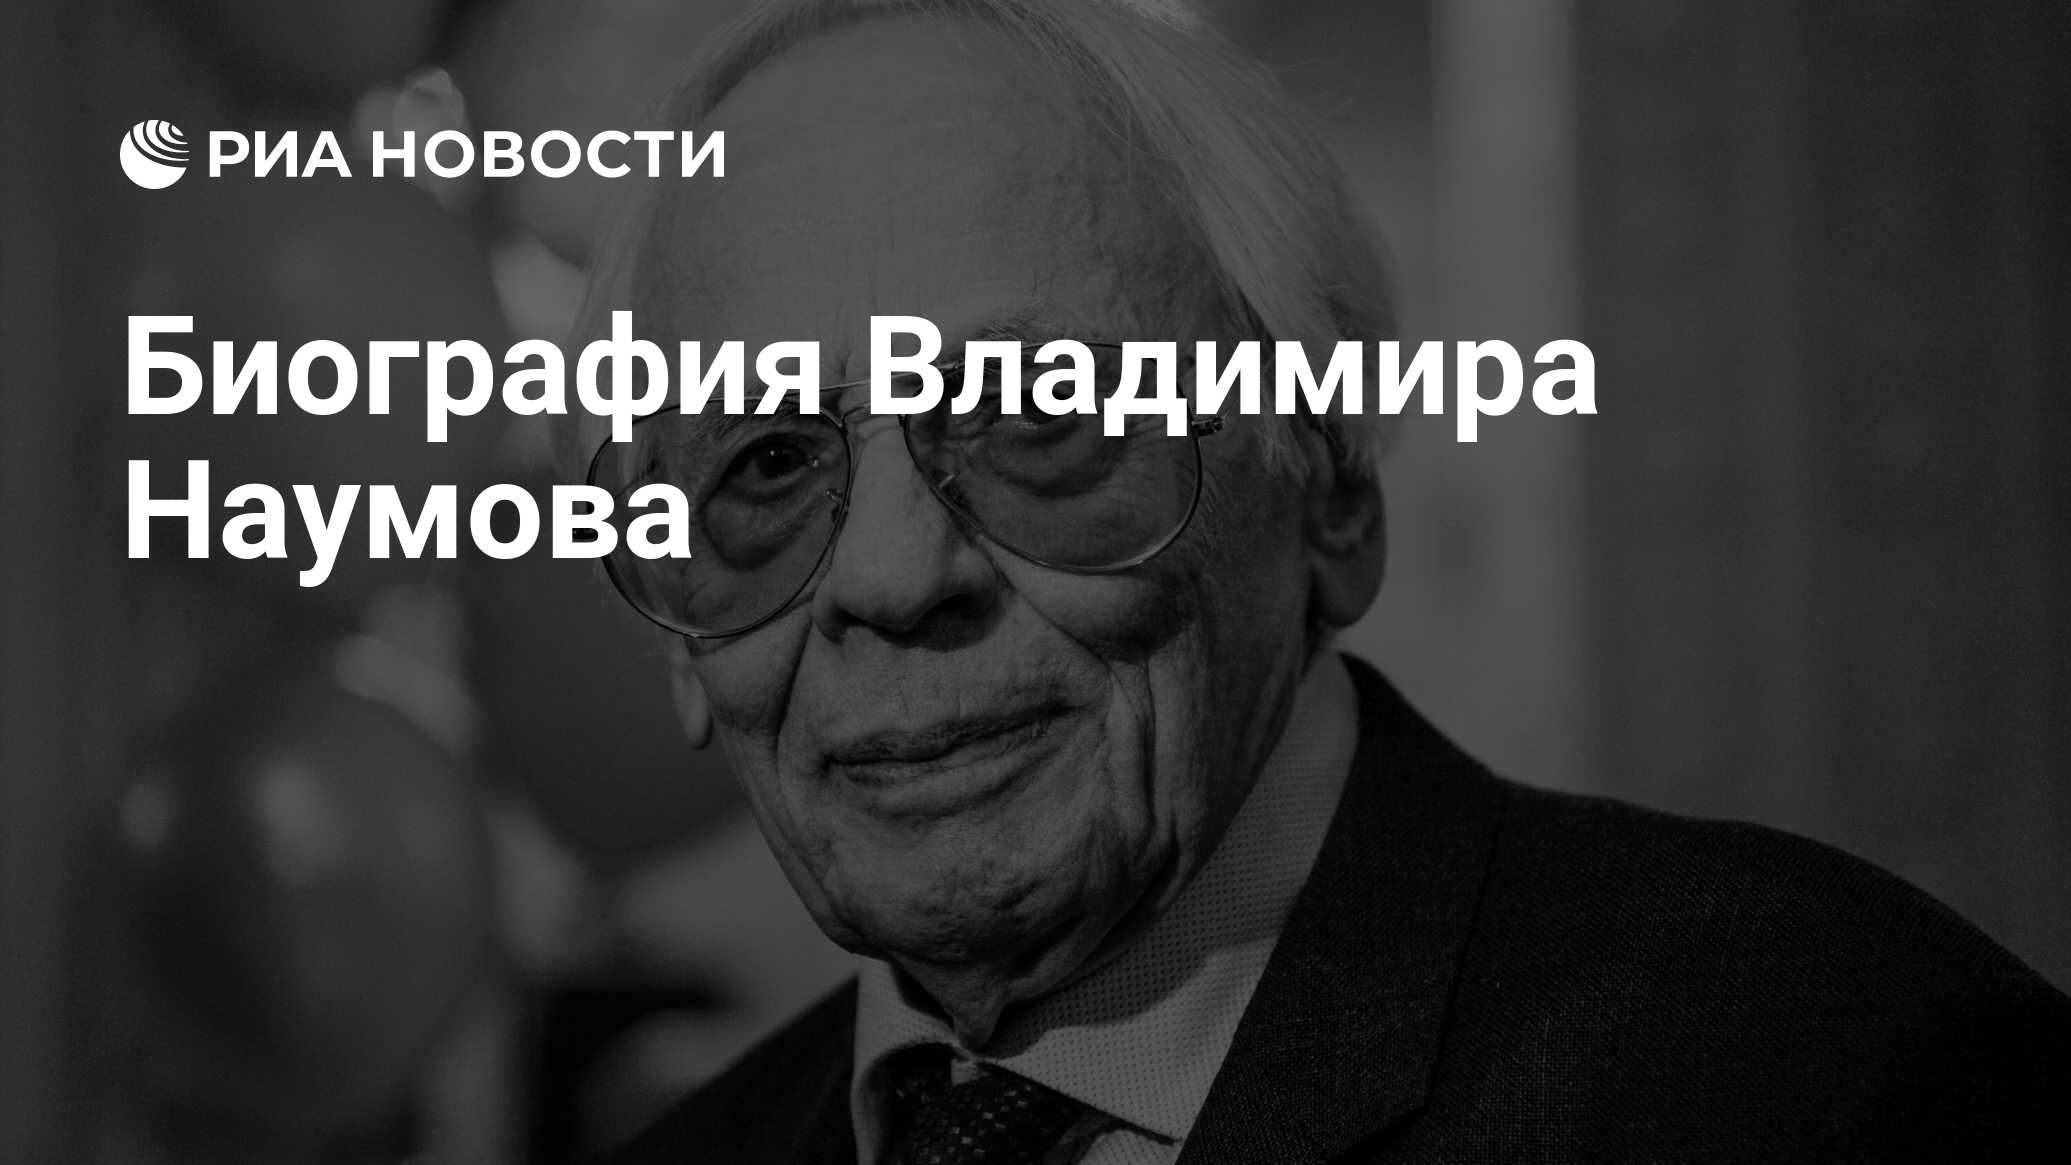 Биография Владимира Наумова - всё о режиссере и его карьере